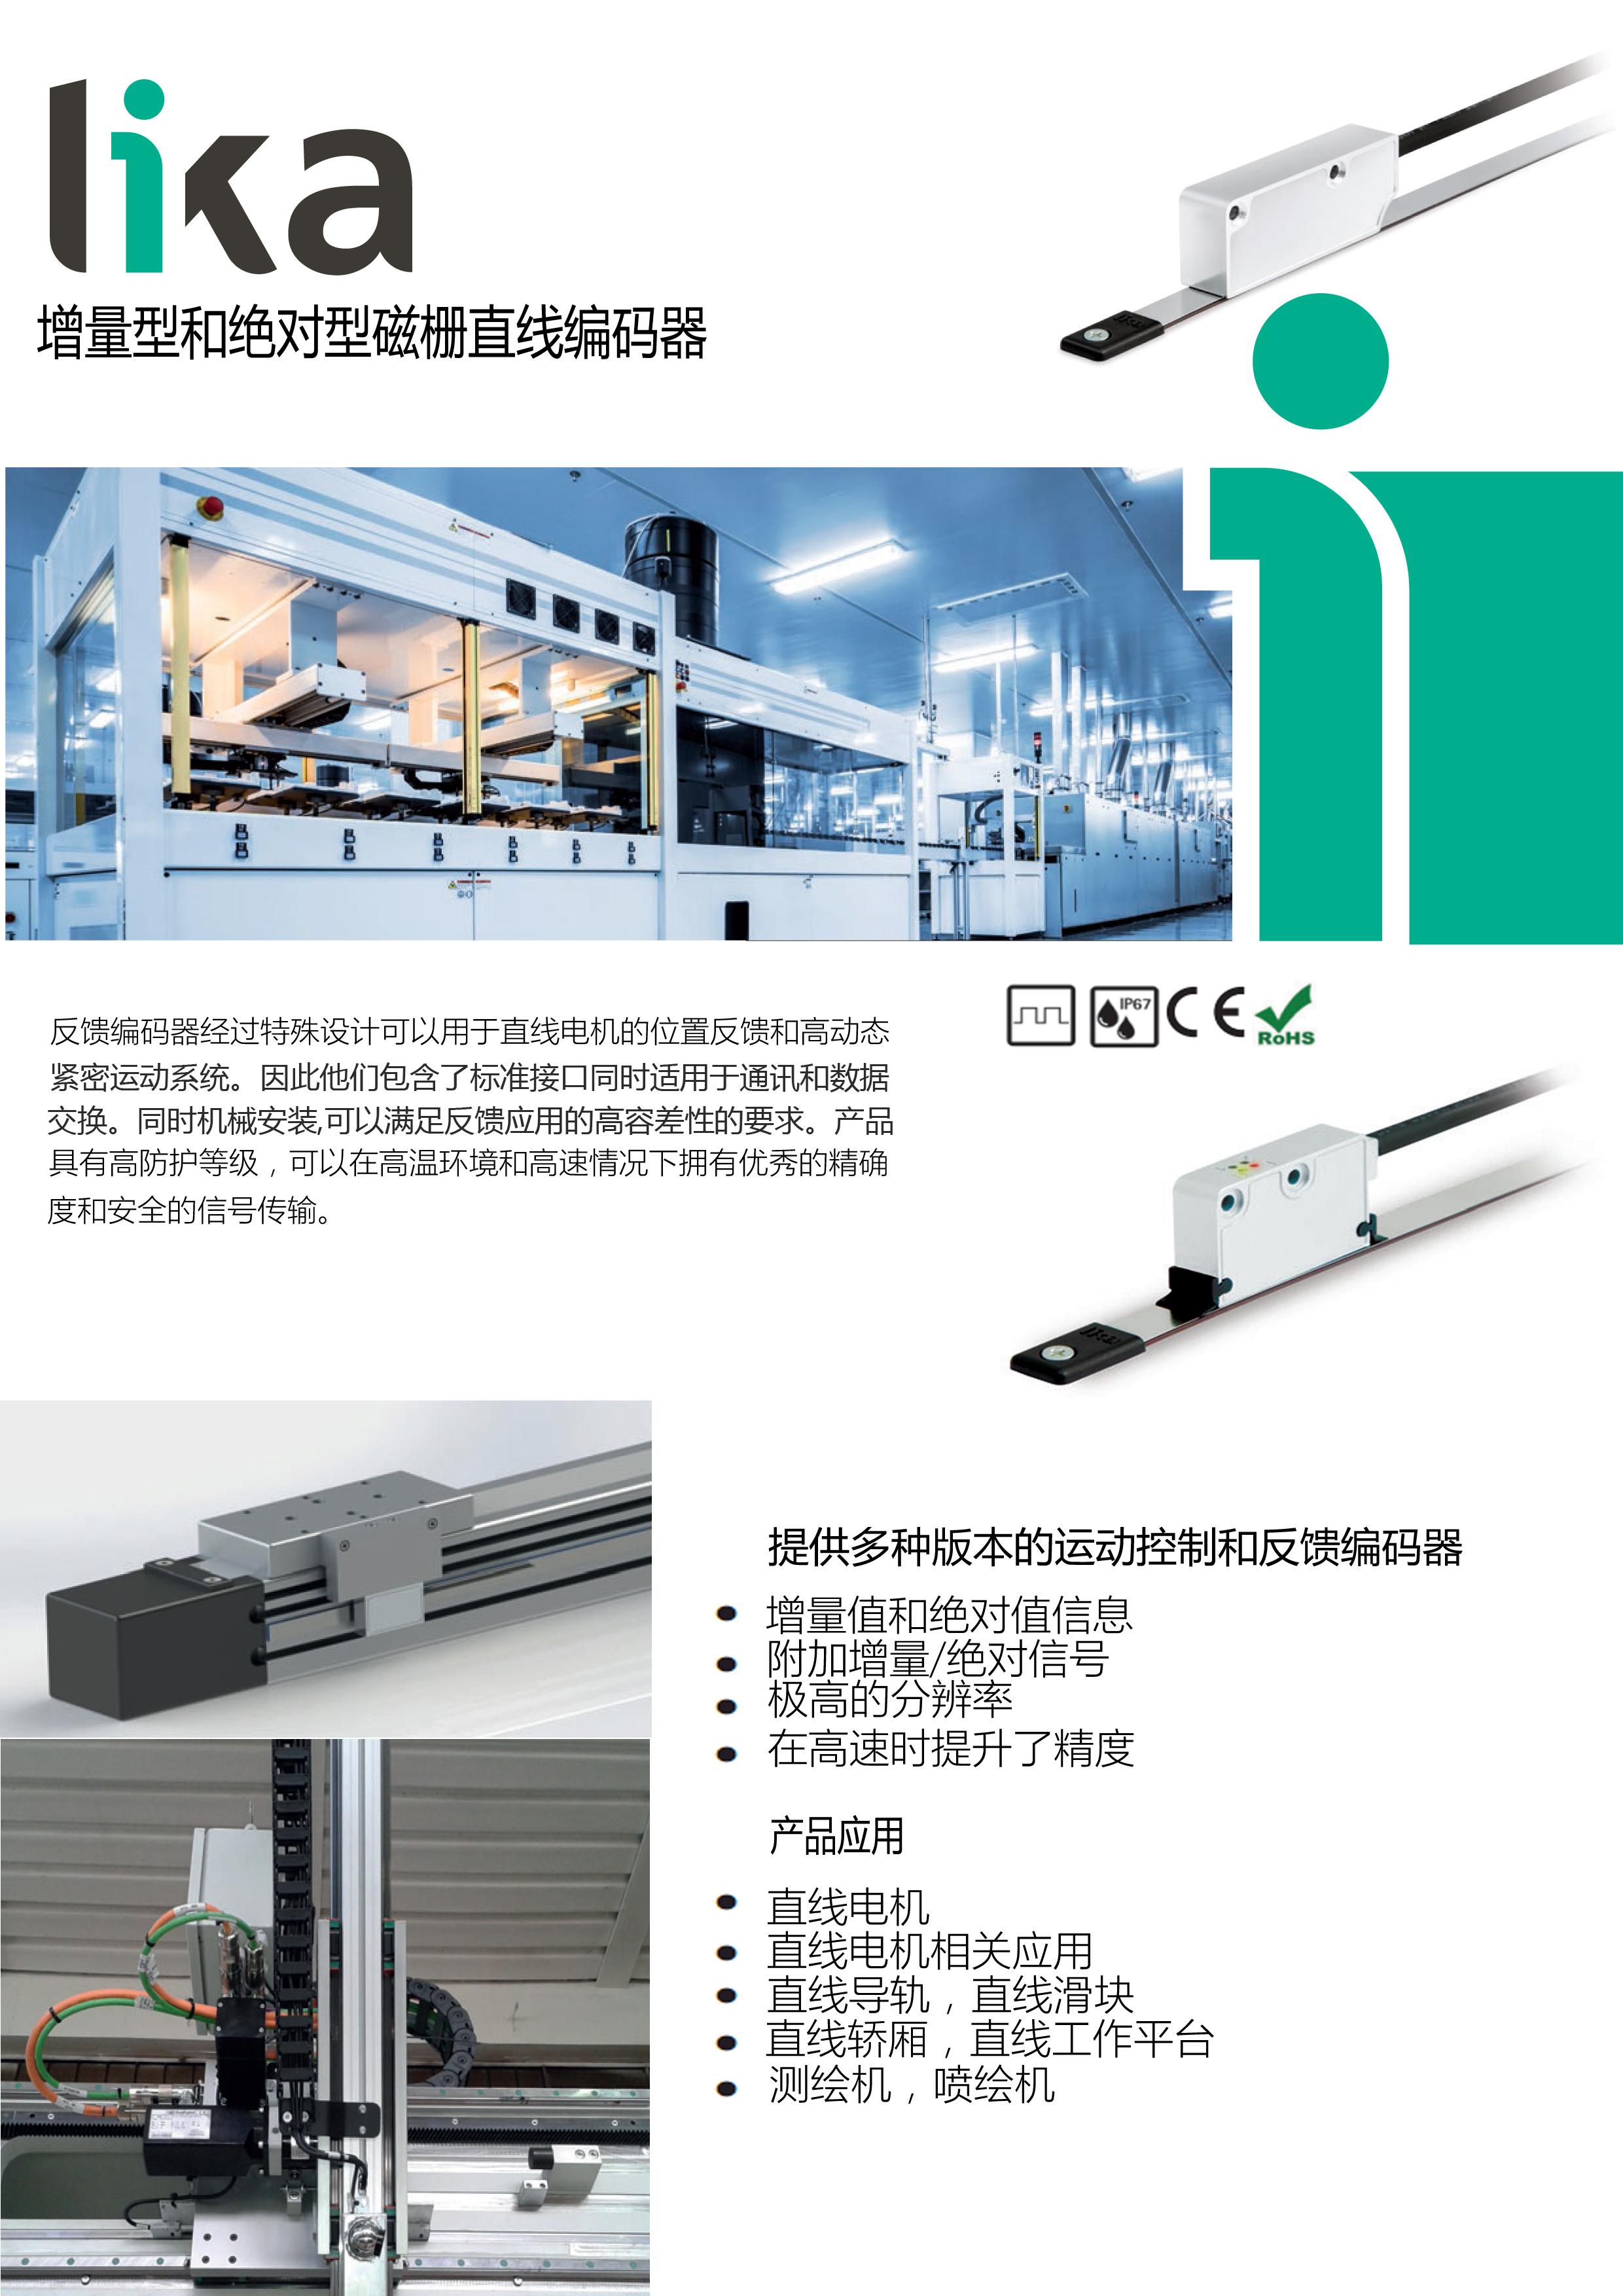 上海供应原装进口LIKA SME11-L-1-1-R-2-H 直线电机应用传感器磁头。。 直线电机传感器磁头磁栅位移传感器,位移传感器,LIKA磁栅,LIKA磁头